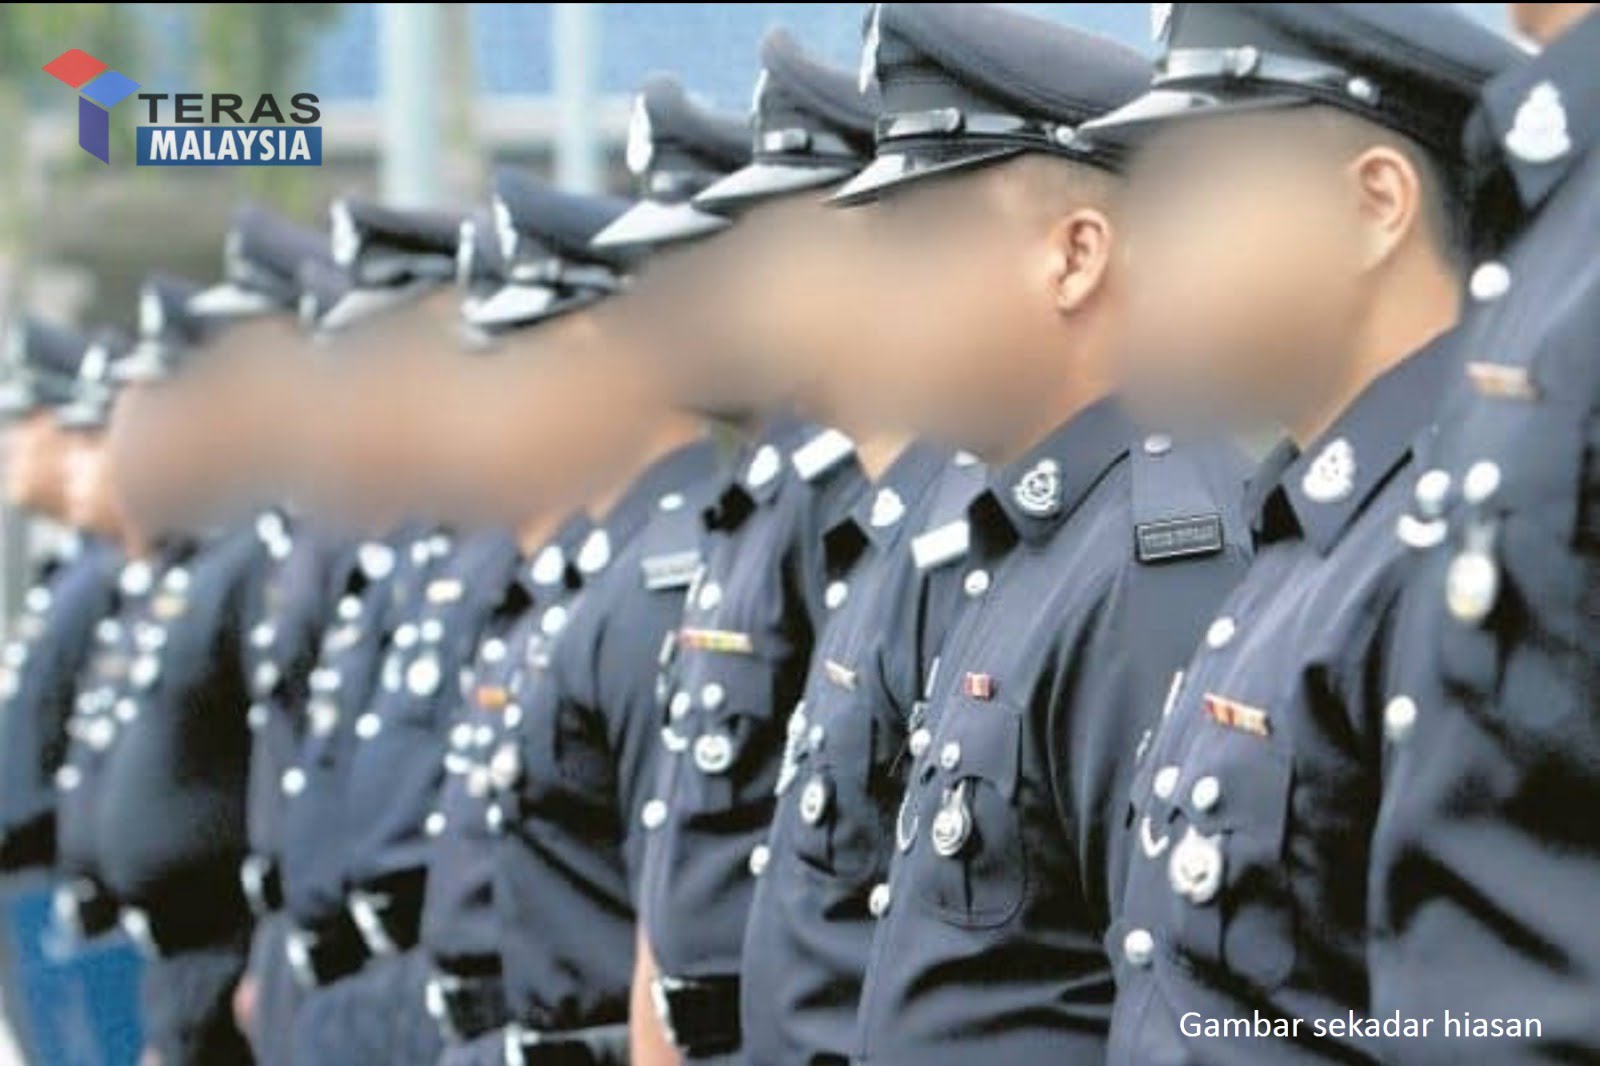 339 pegawai polis diambil tindakan dan dibuang sebab kesalahan yang sangat memalukan dan jijik